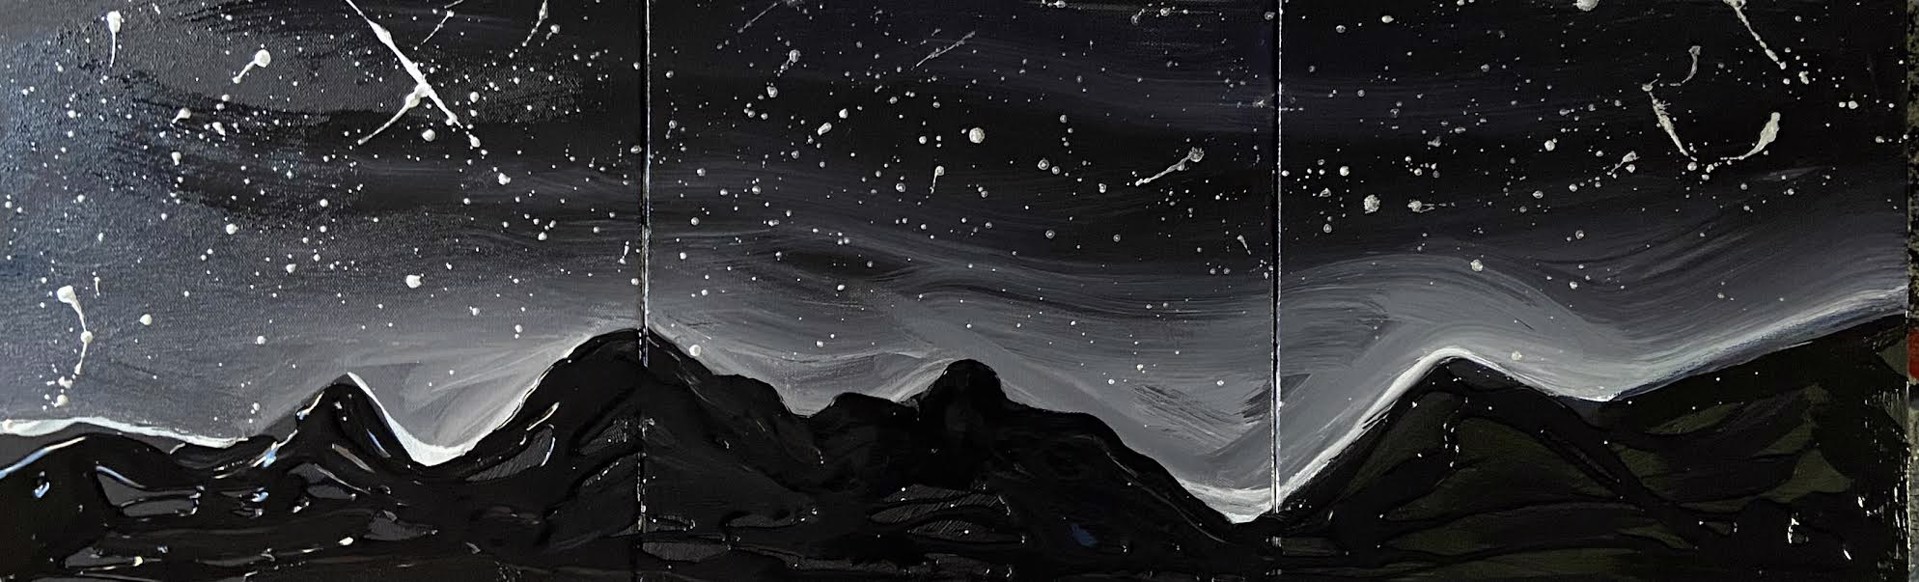 Dark Sky Sanctuary- Triptych SOLD by Jessamine Narita